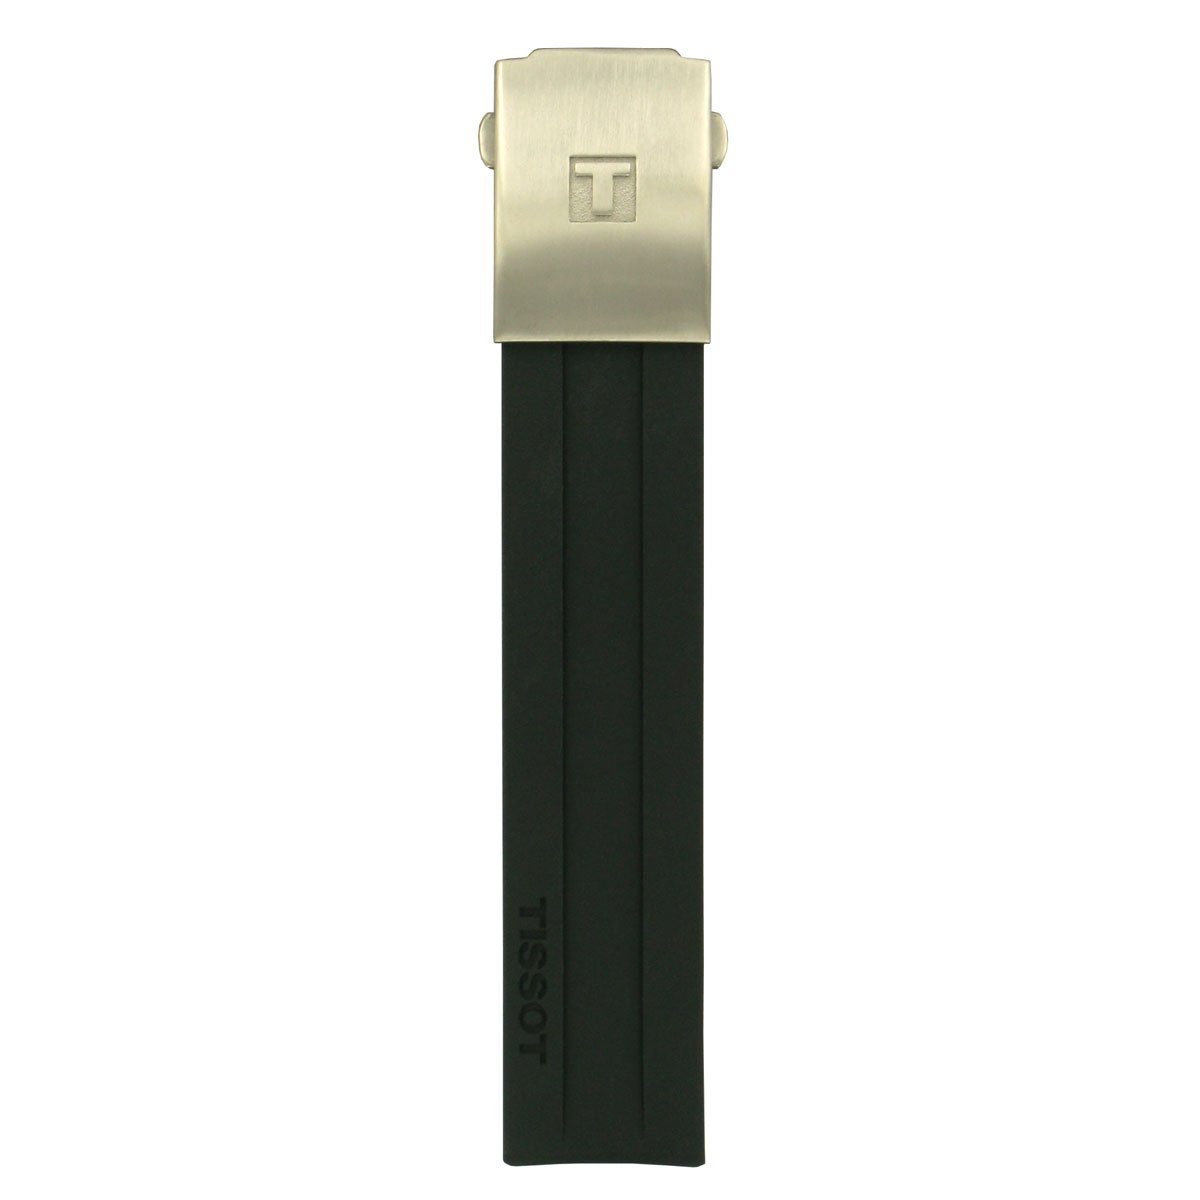 Tissot Men's Black Rubber Strap Titanium GMT Watch Strap image